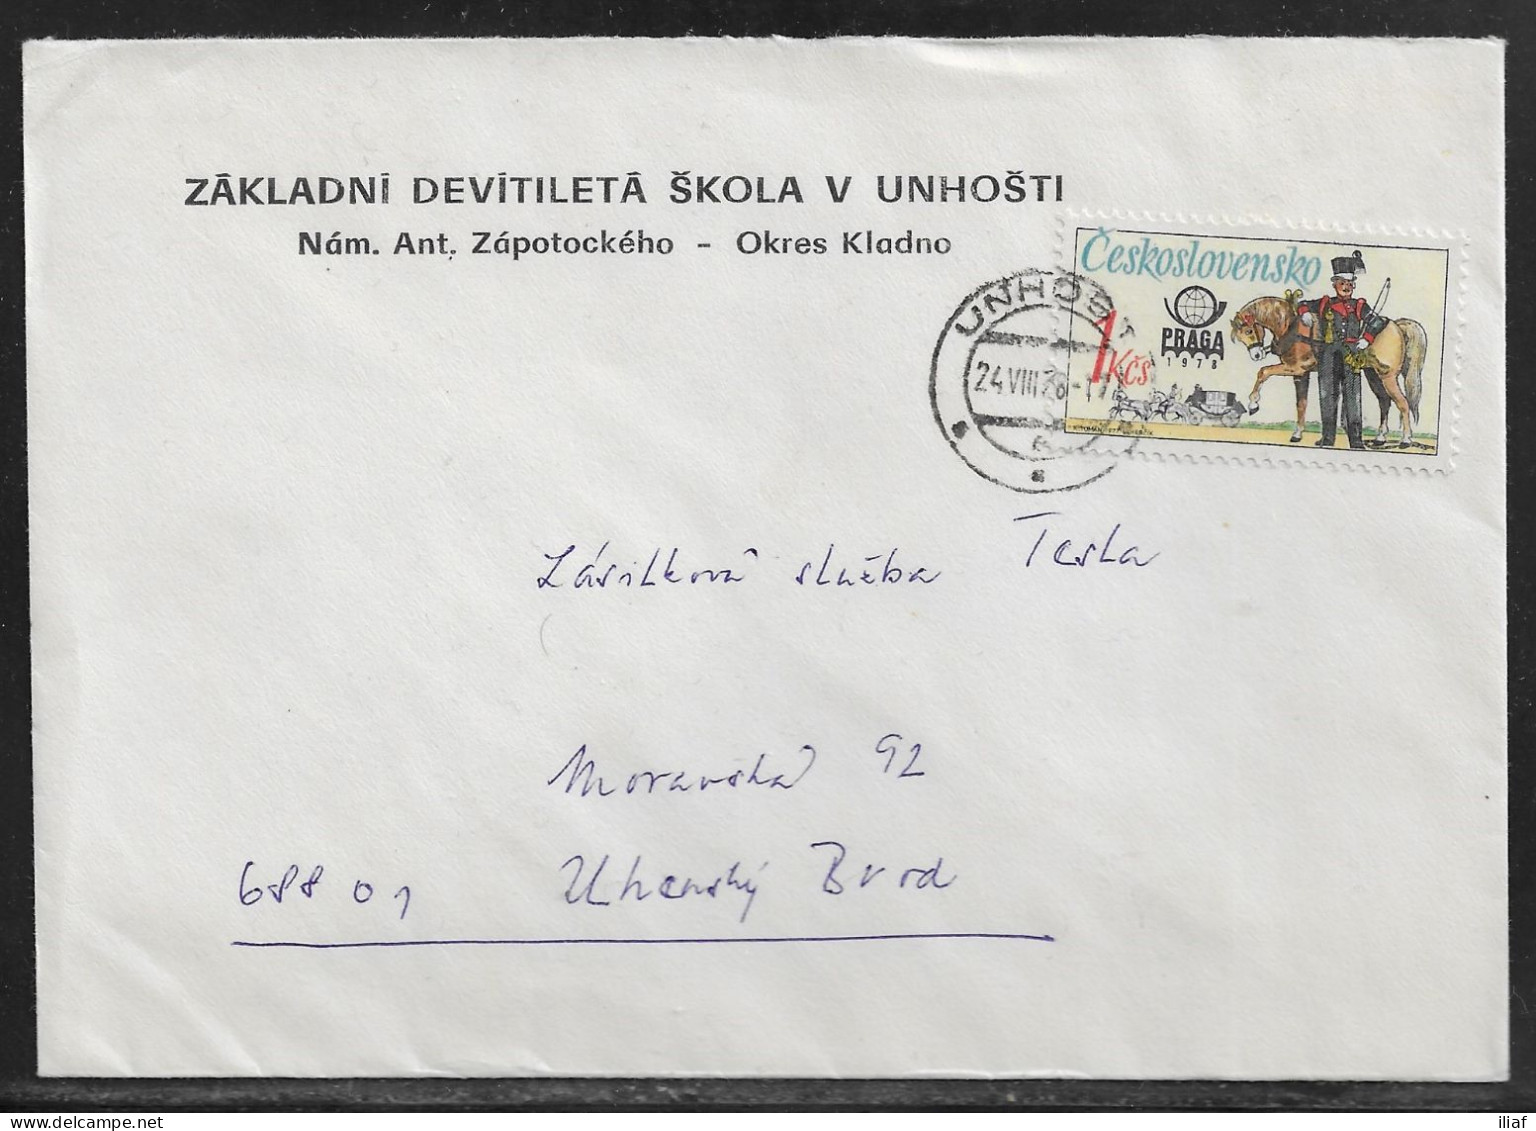 Czechoslovakia. Stamp Sc. 2117 On Letter With The Header “Zakladni Devitileta Skola V Unhosyi” Sent From Unhost 24.08.78 - Covers & Documents